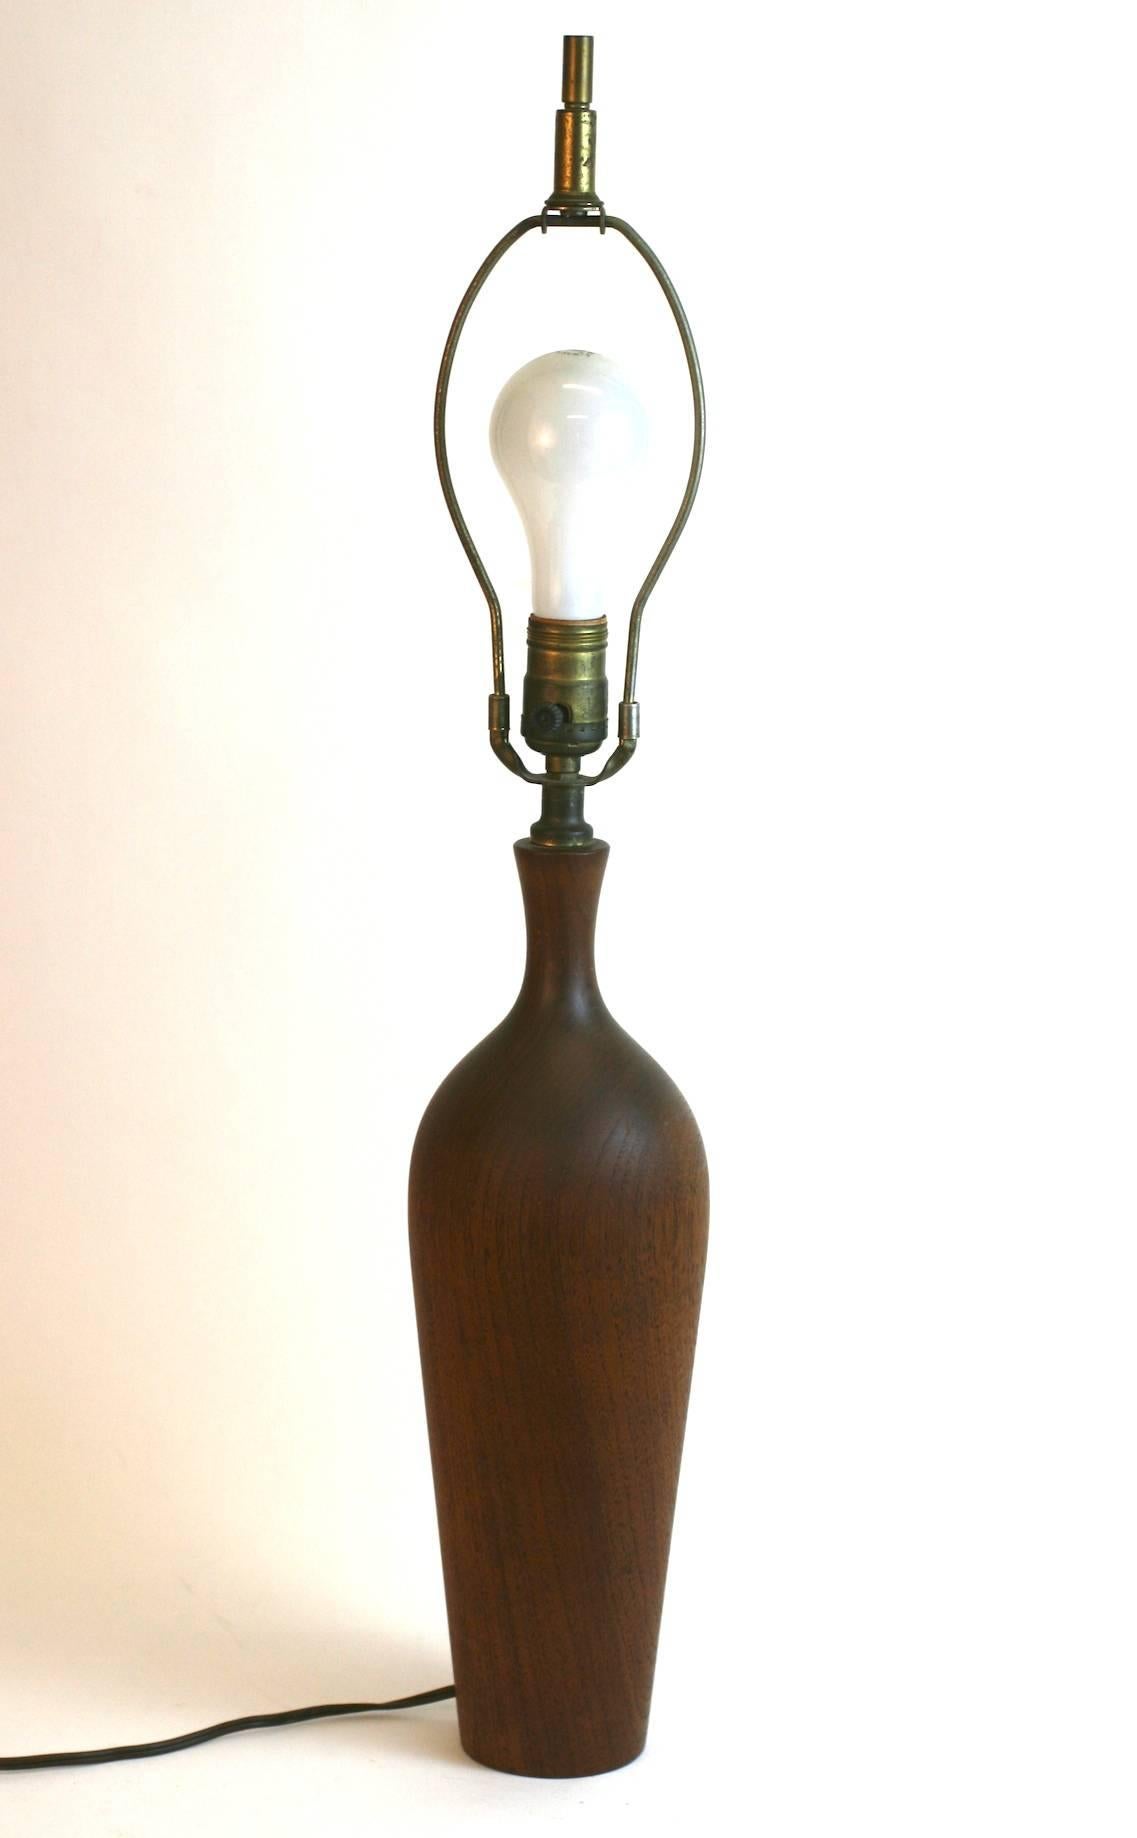 Élégante lampe moderniste en bois tourné qui met en valeur le grain du noyer. L'abat-jour n'est pas inclus. 1950s, USA. 
hauteur totale de 28